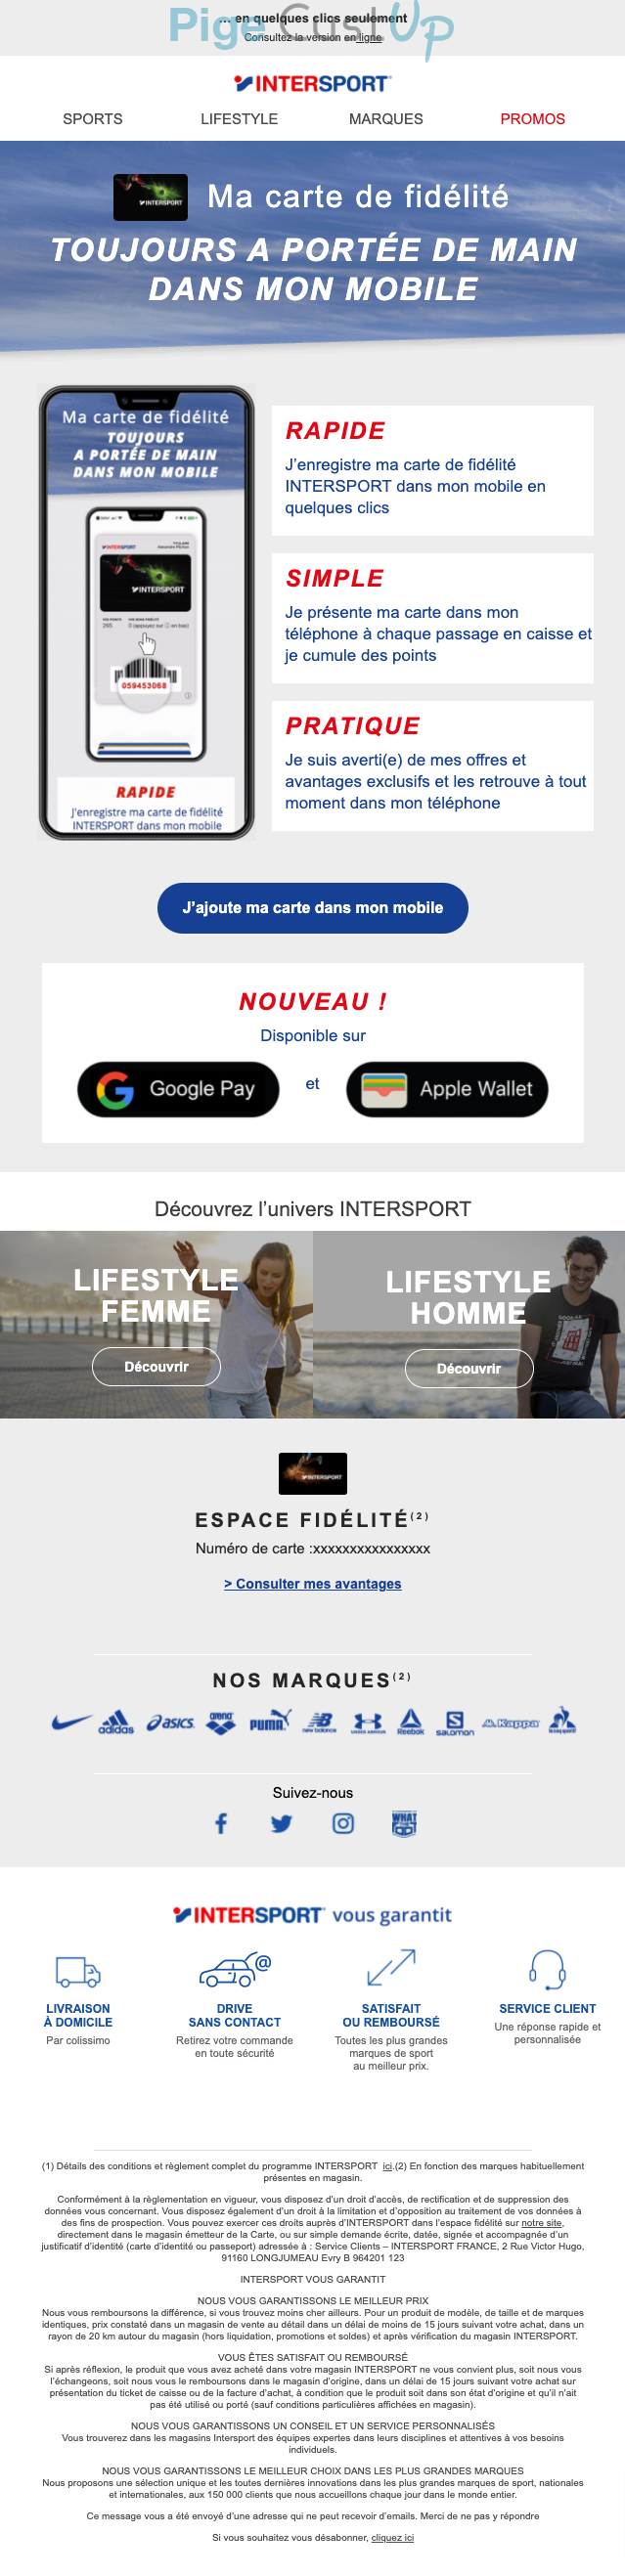 Exemple de Type de media   - Intersport - Marketing fidélisation - Animation / Vie du Programme de Fidélité